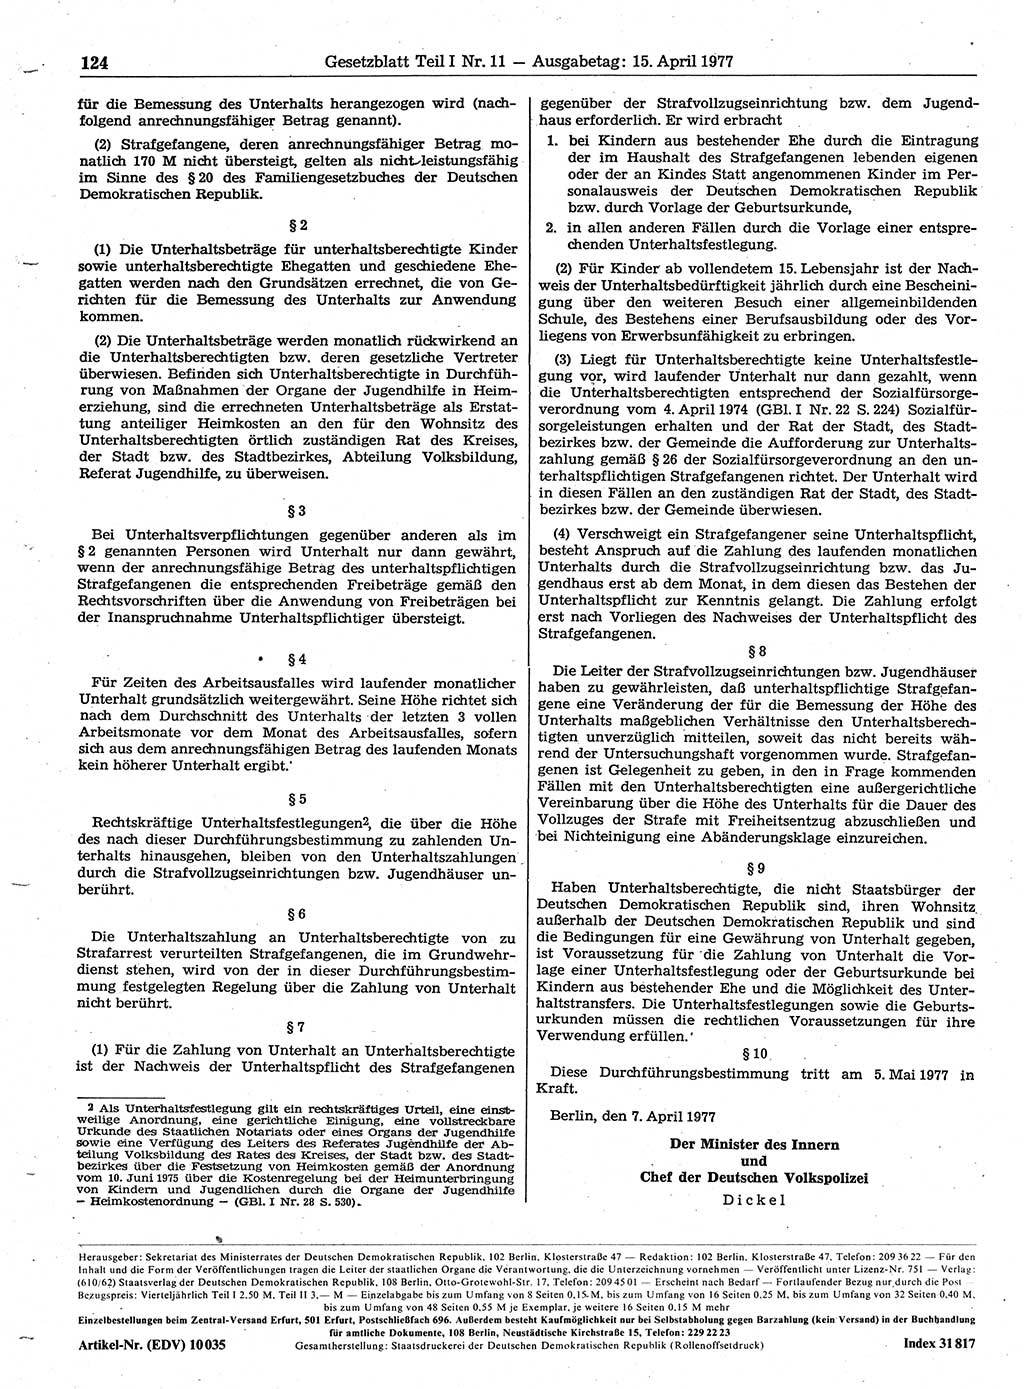 Gesetzblatt (GBl.) der Deutschen Demokratischen Republik (DDR) Teil Ⅰ 1977, Seite 124 (GBl. DDR Ⅰ 1977, S. 124)